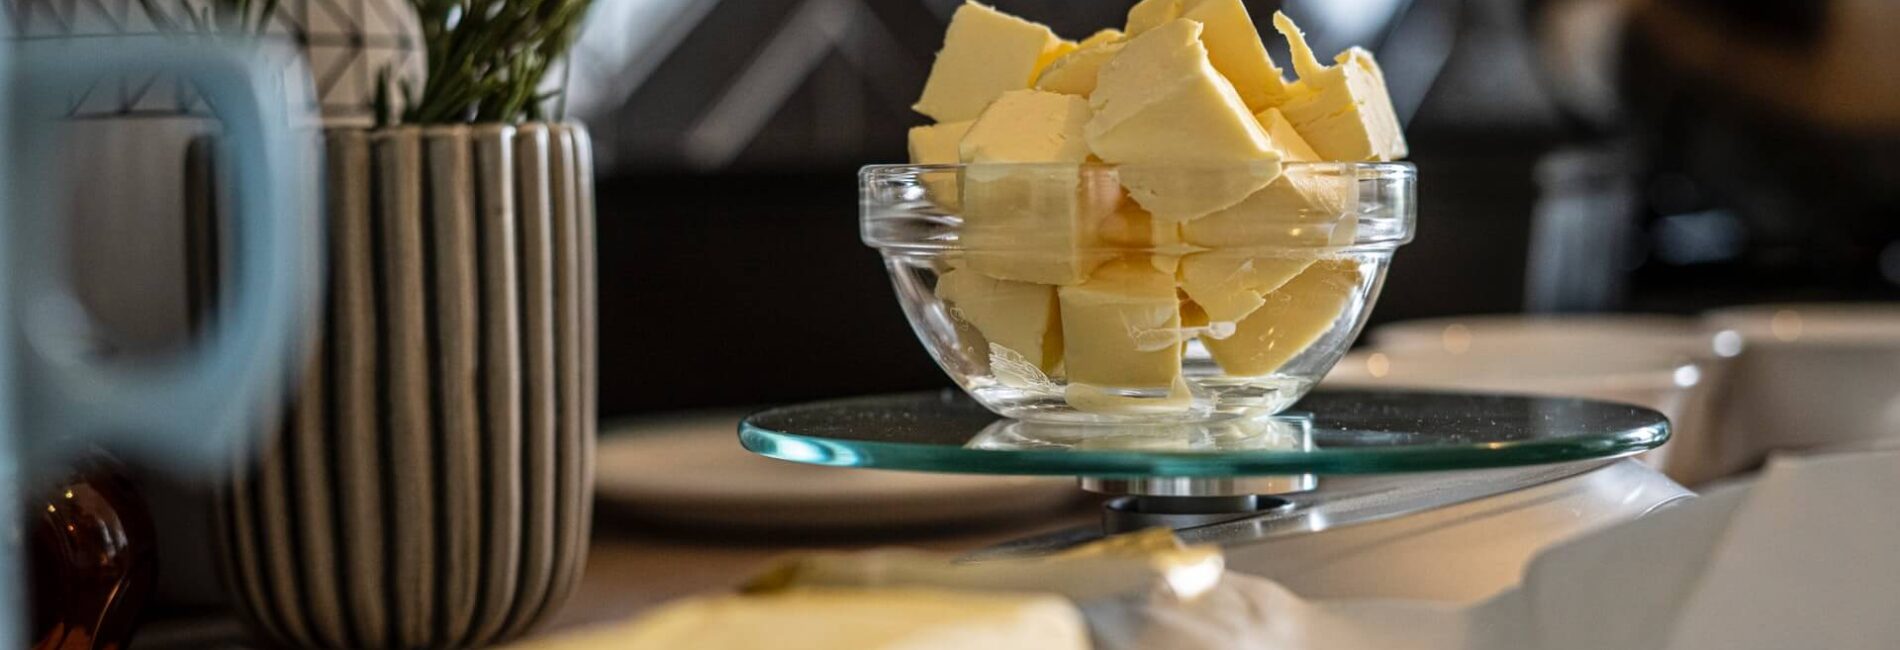 Homemade Spreadable Butter